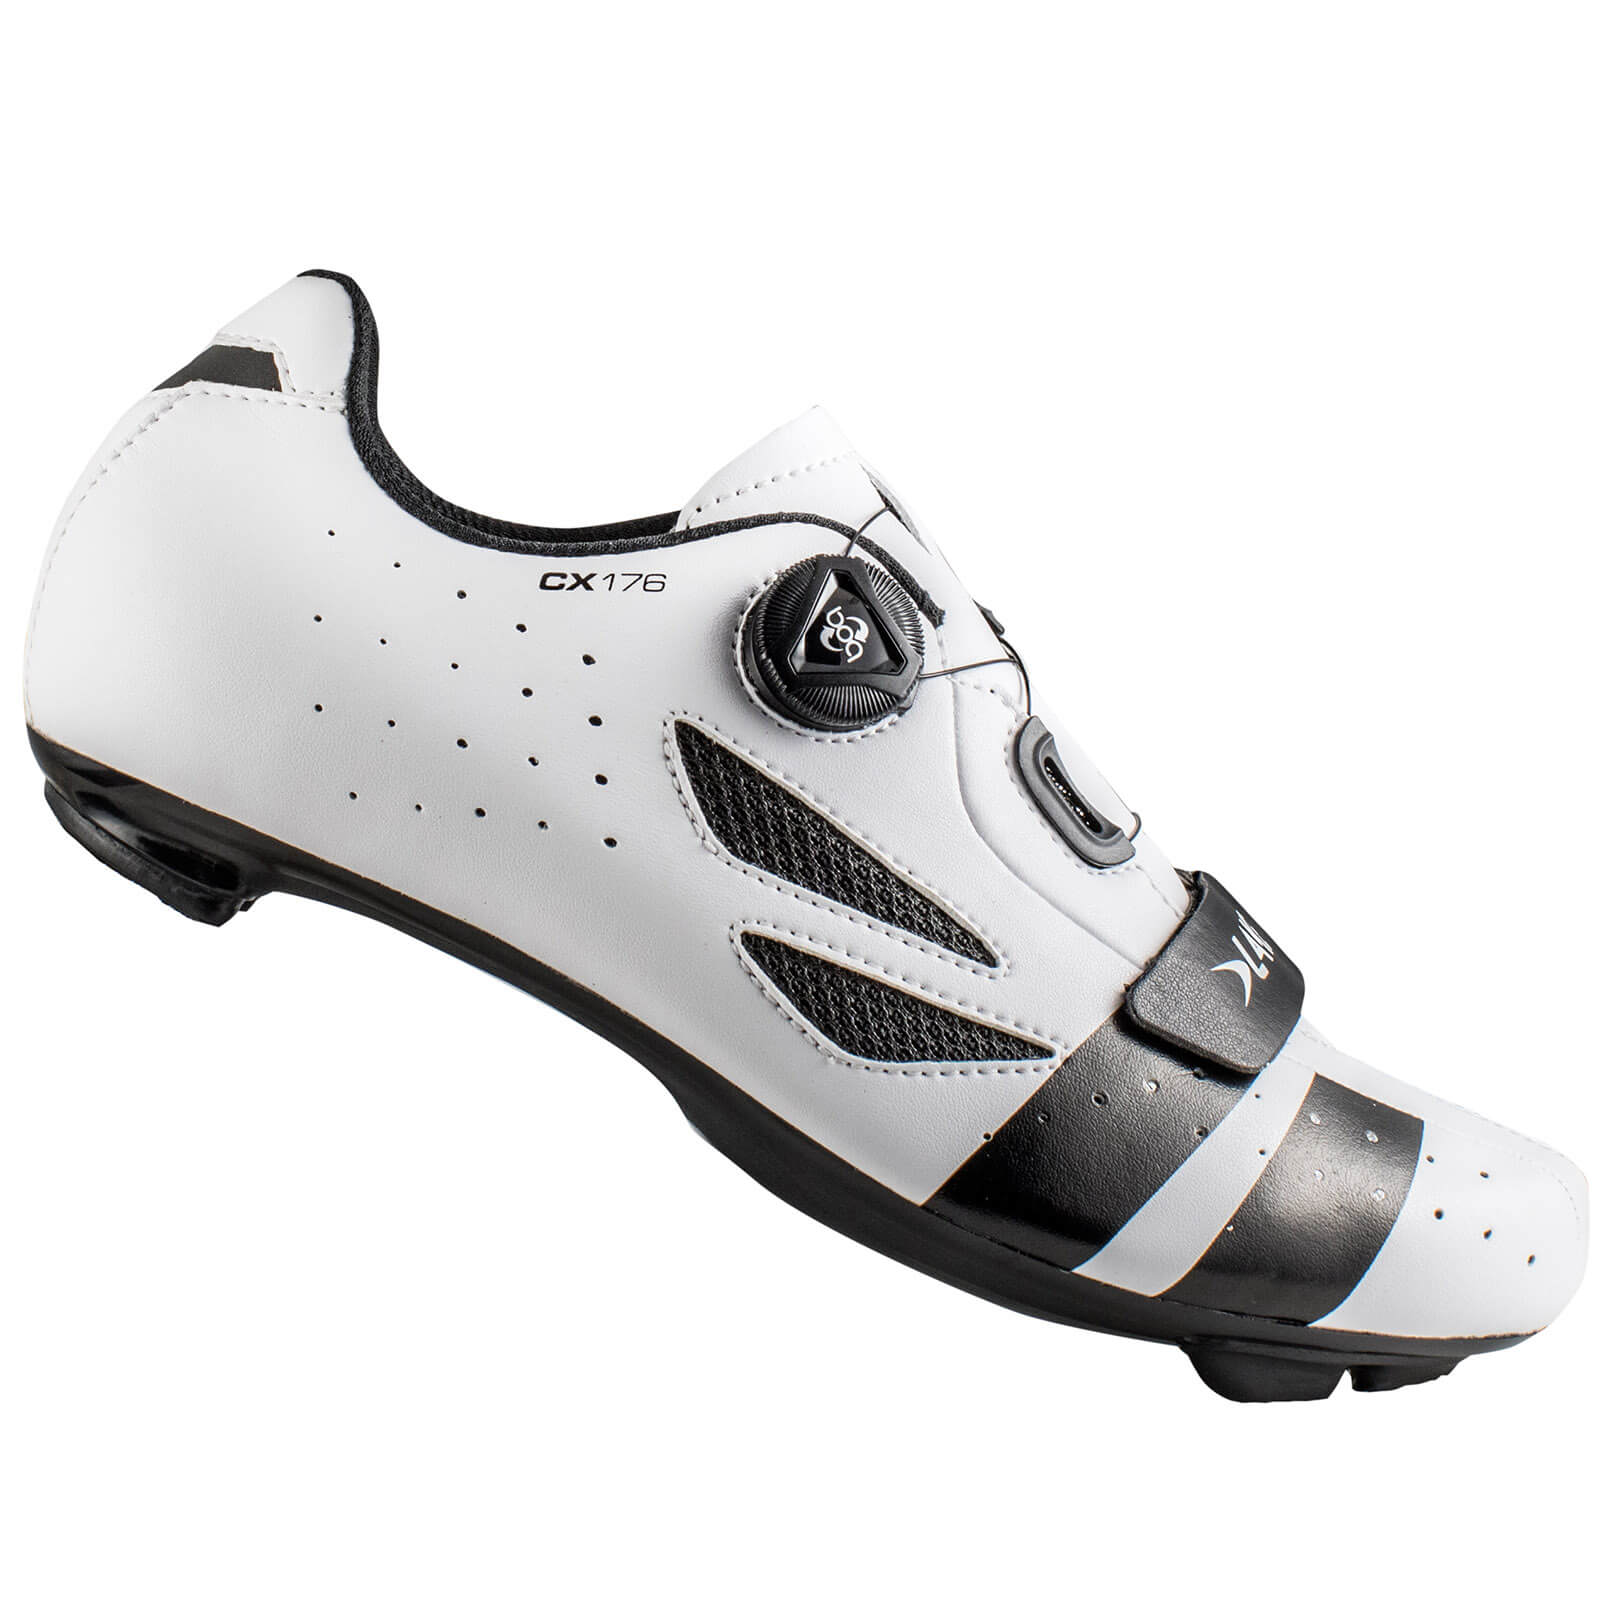 Lake CX176 Road Shoes - White/Black - EU 44